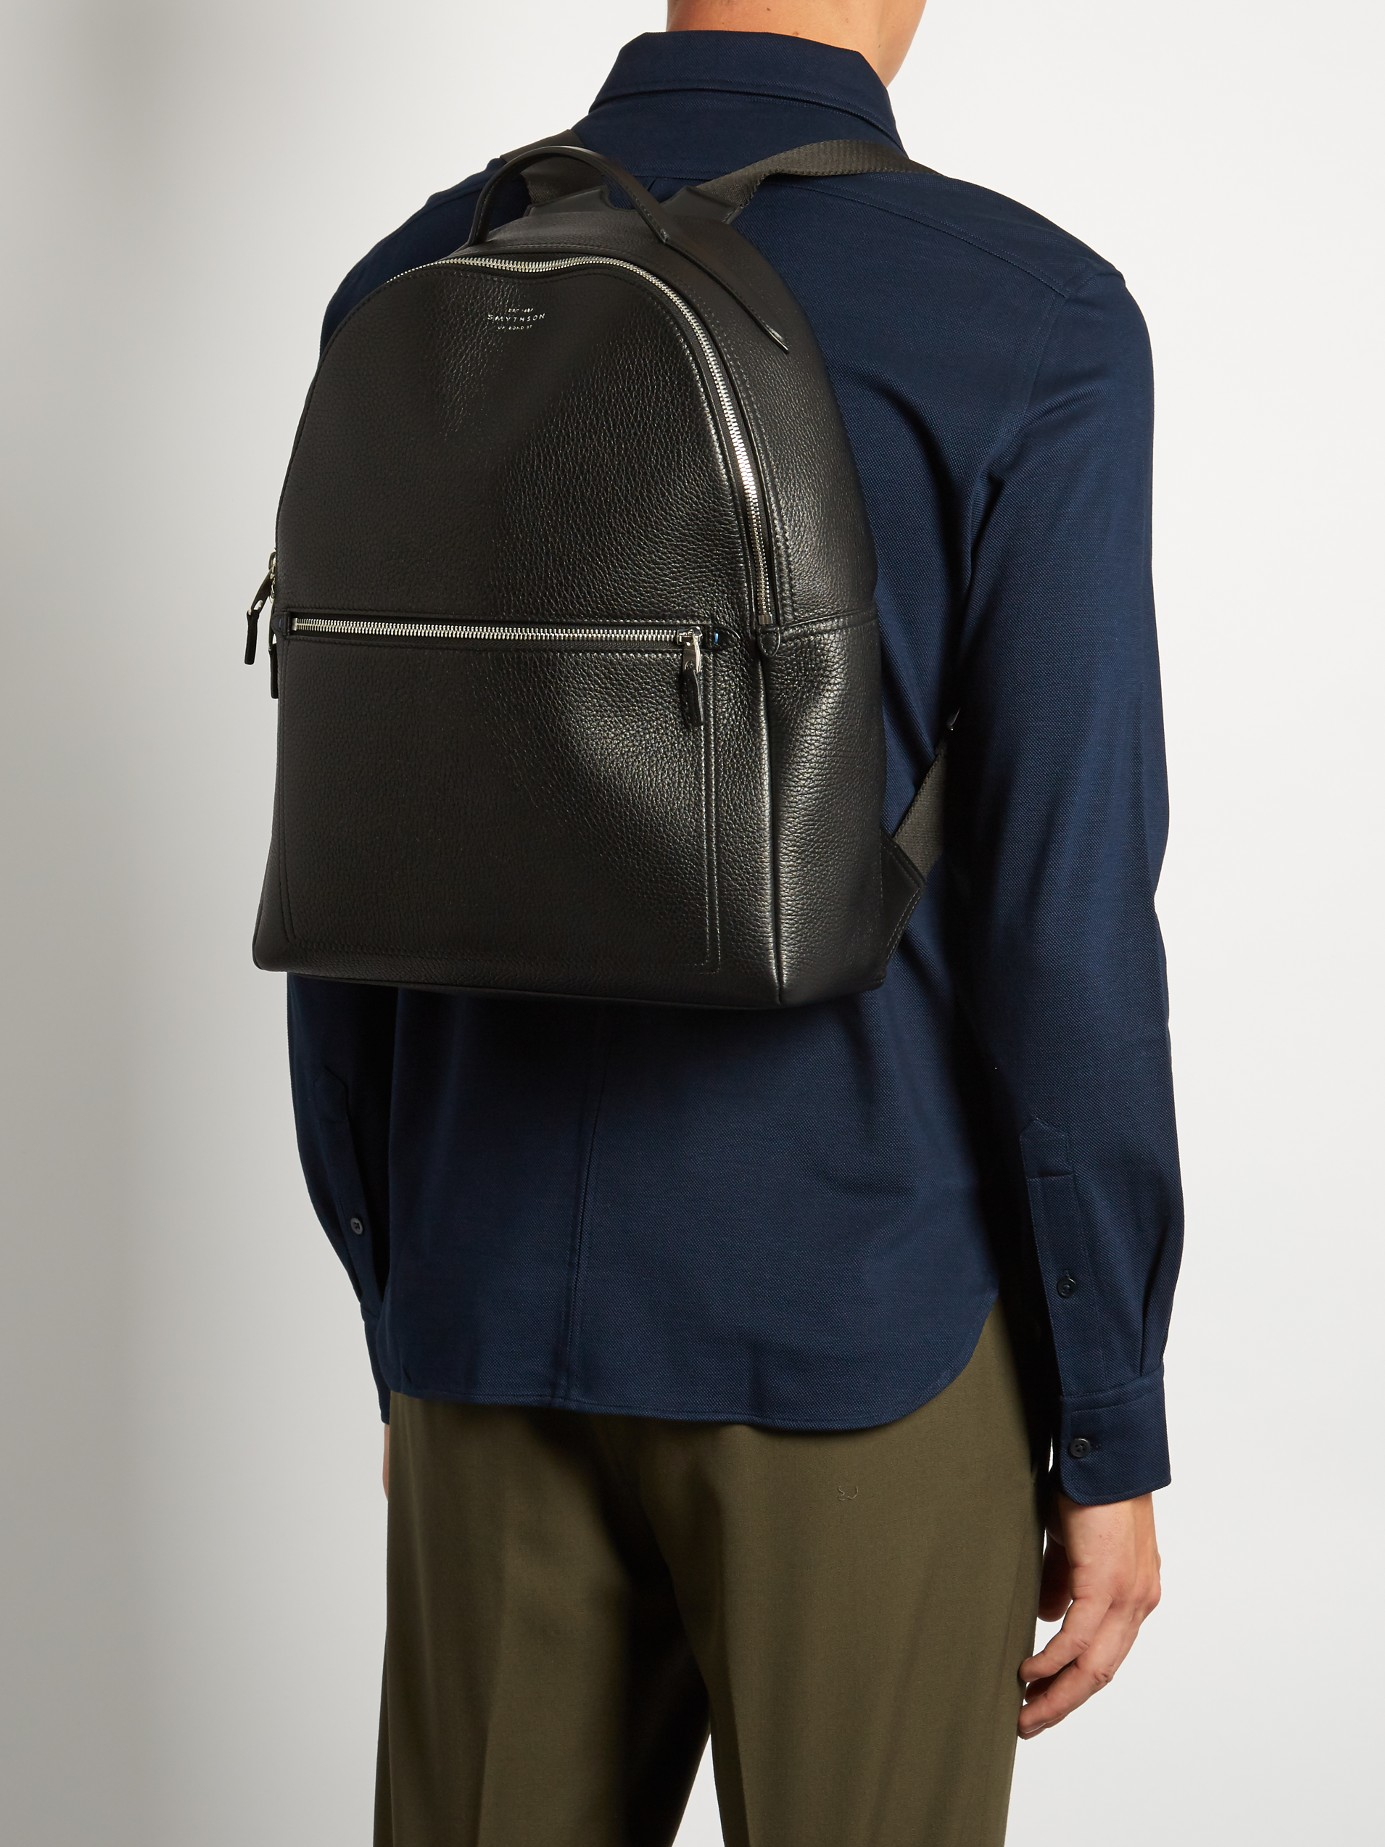 Lyst - Smythson Burlington Leather Backpack in Black for Men